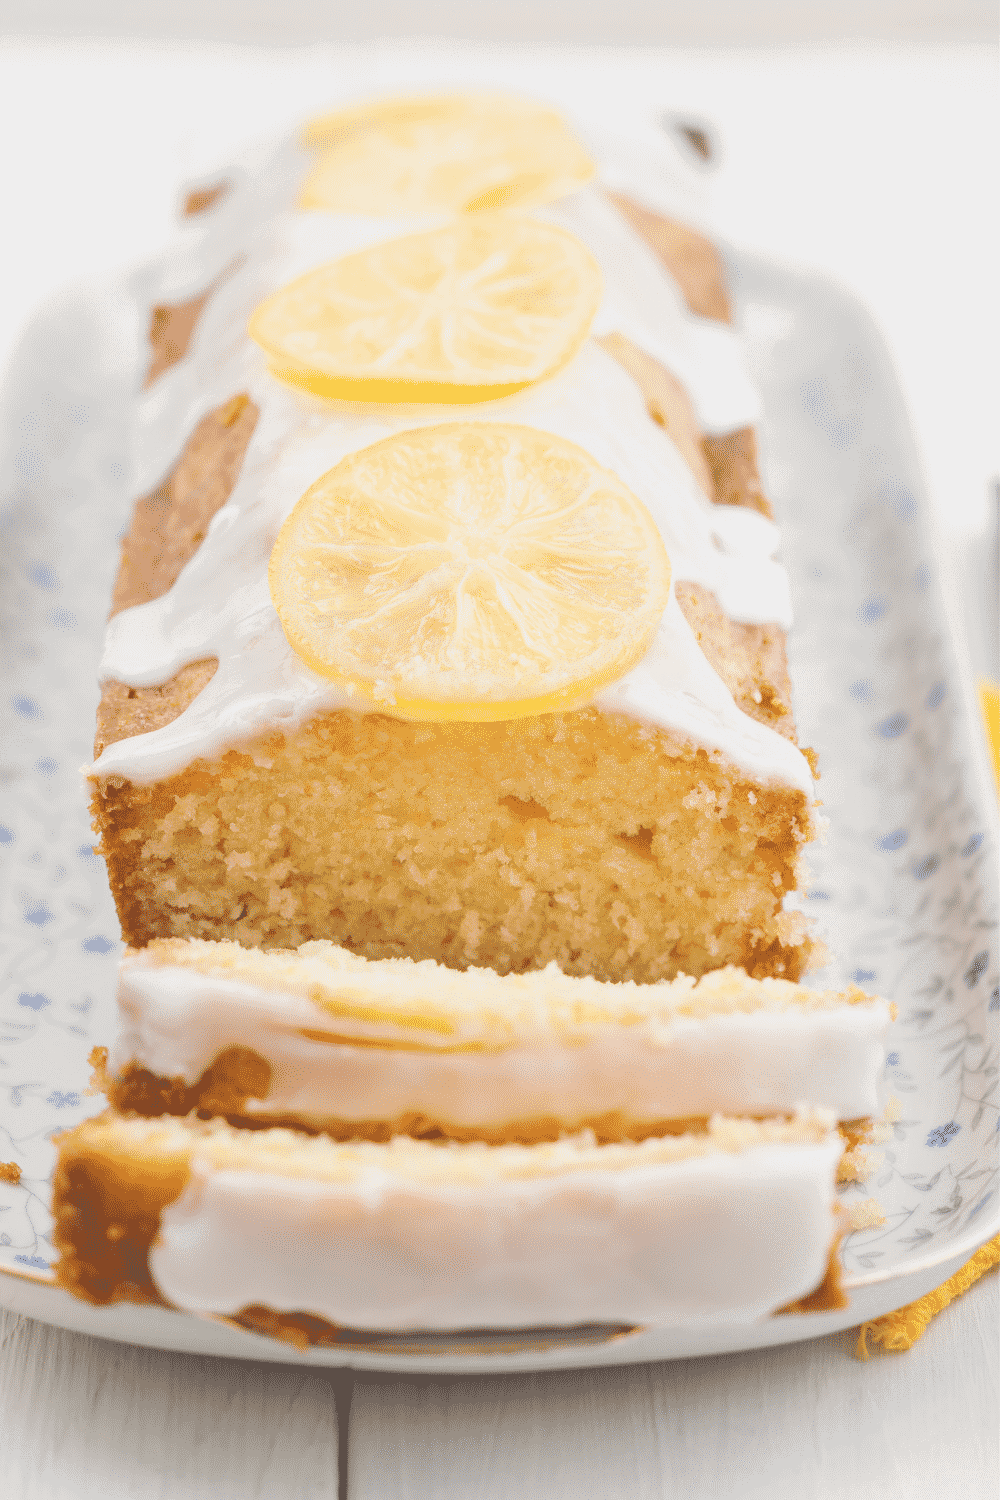 Ina Garten's Lemon Cake